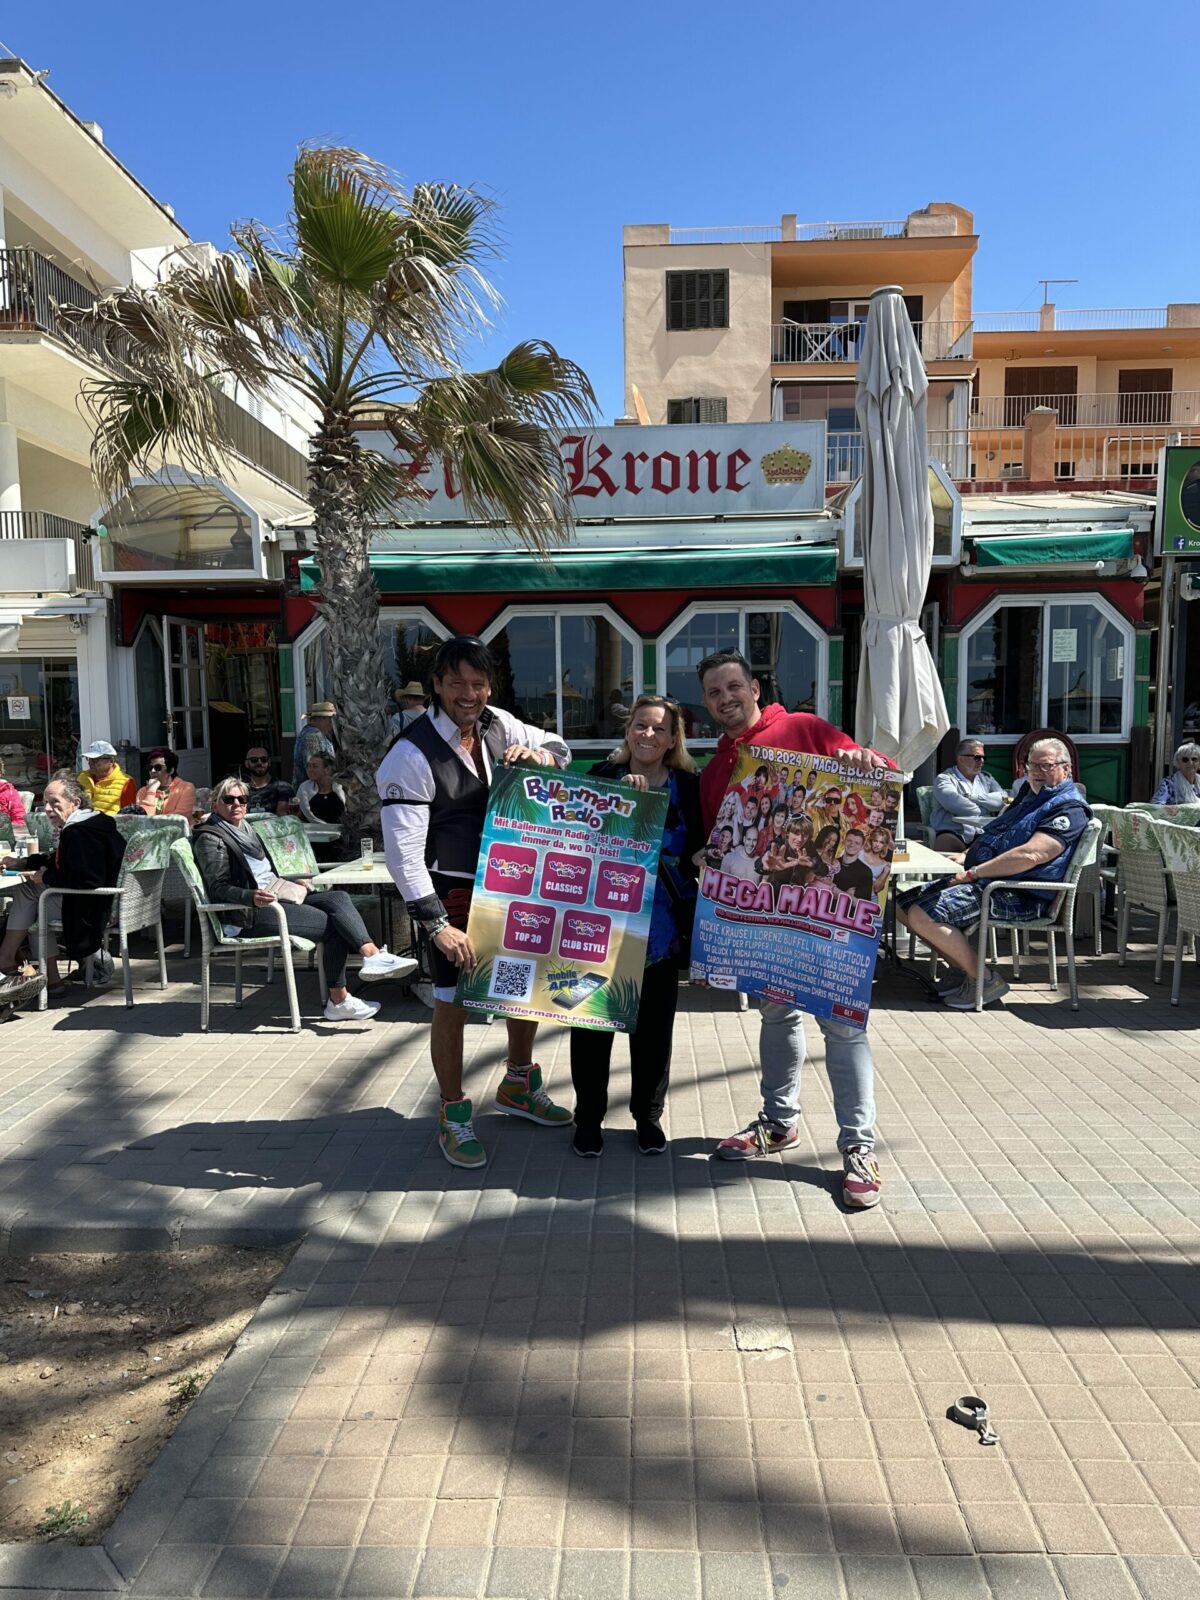 Große Promotion-Aktion auf Mallorca mit MEGA MALLE & „Zur Krone“